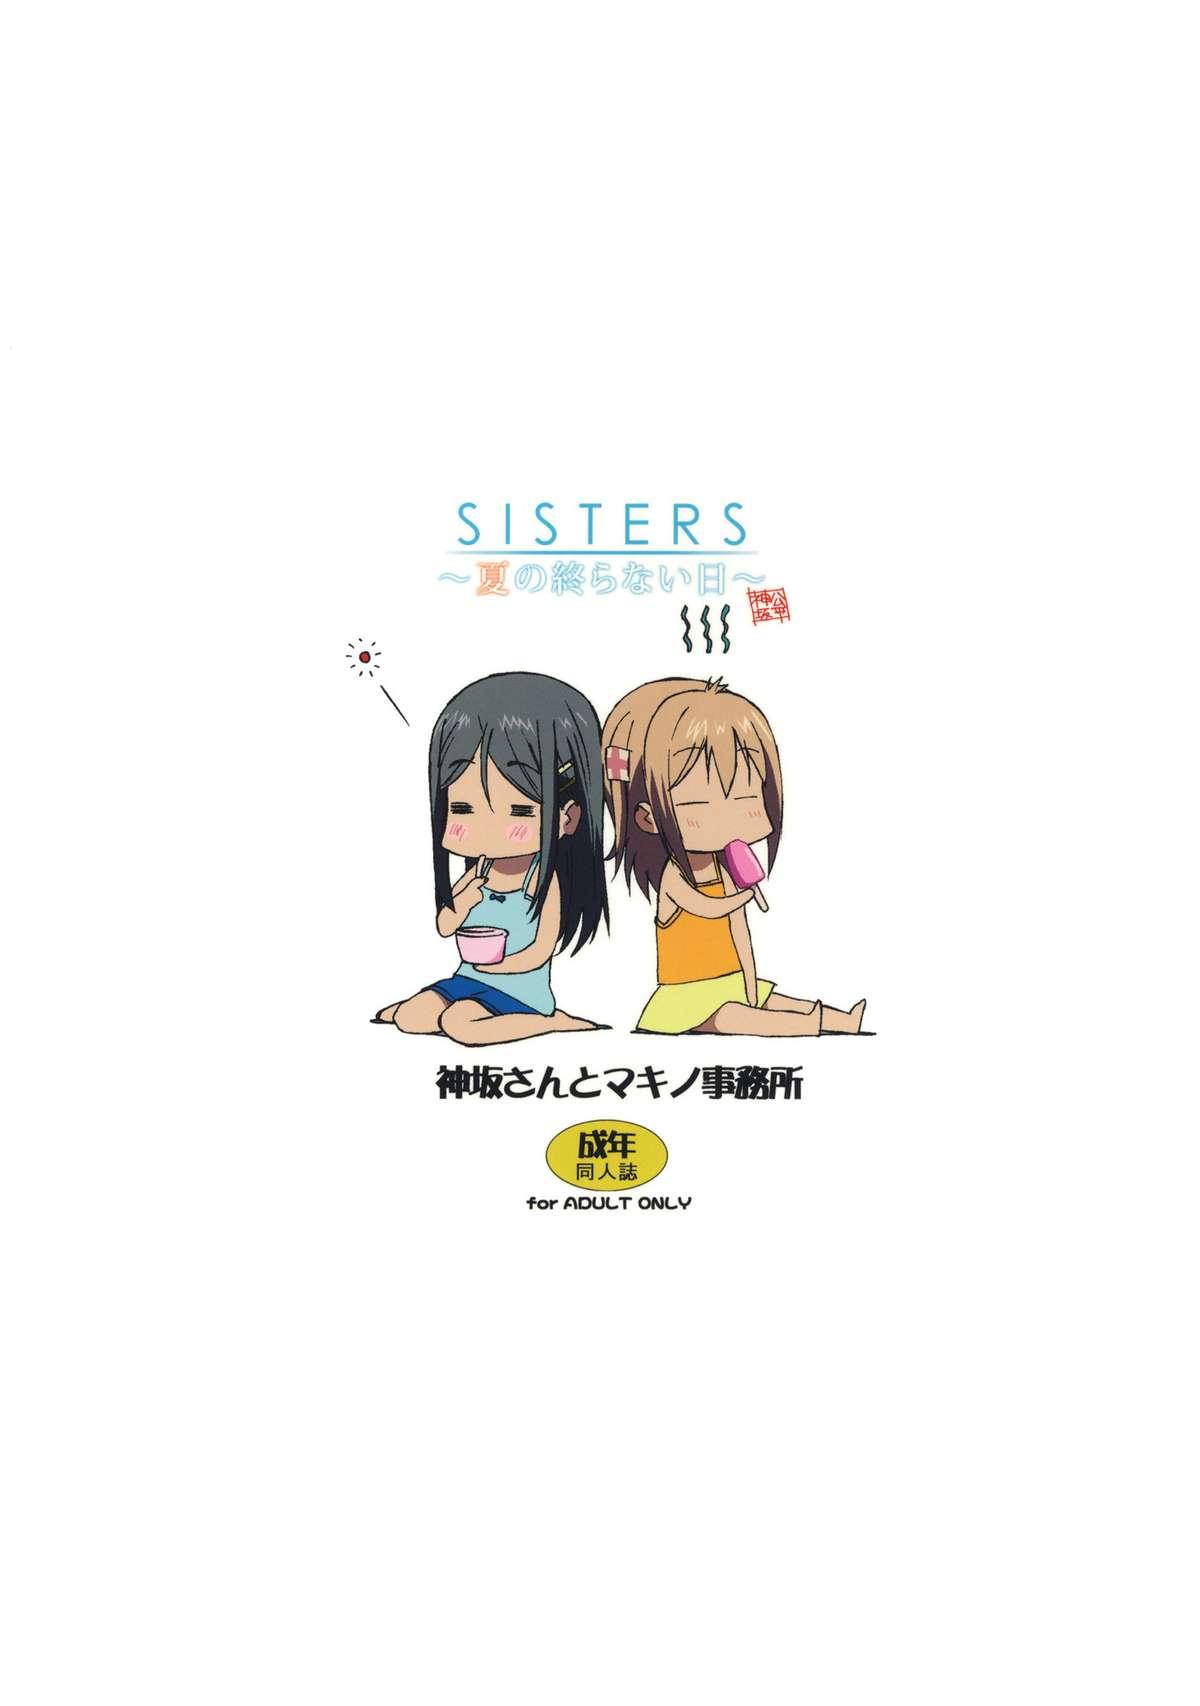 Star SISTERS - Kakusareta Kioku, Natsu no Owaranai Hi - Sisters natsu no saigo no hi Strap On - Page 35